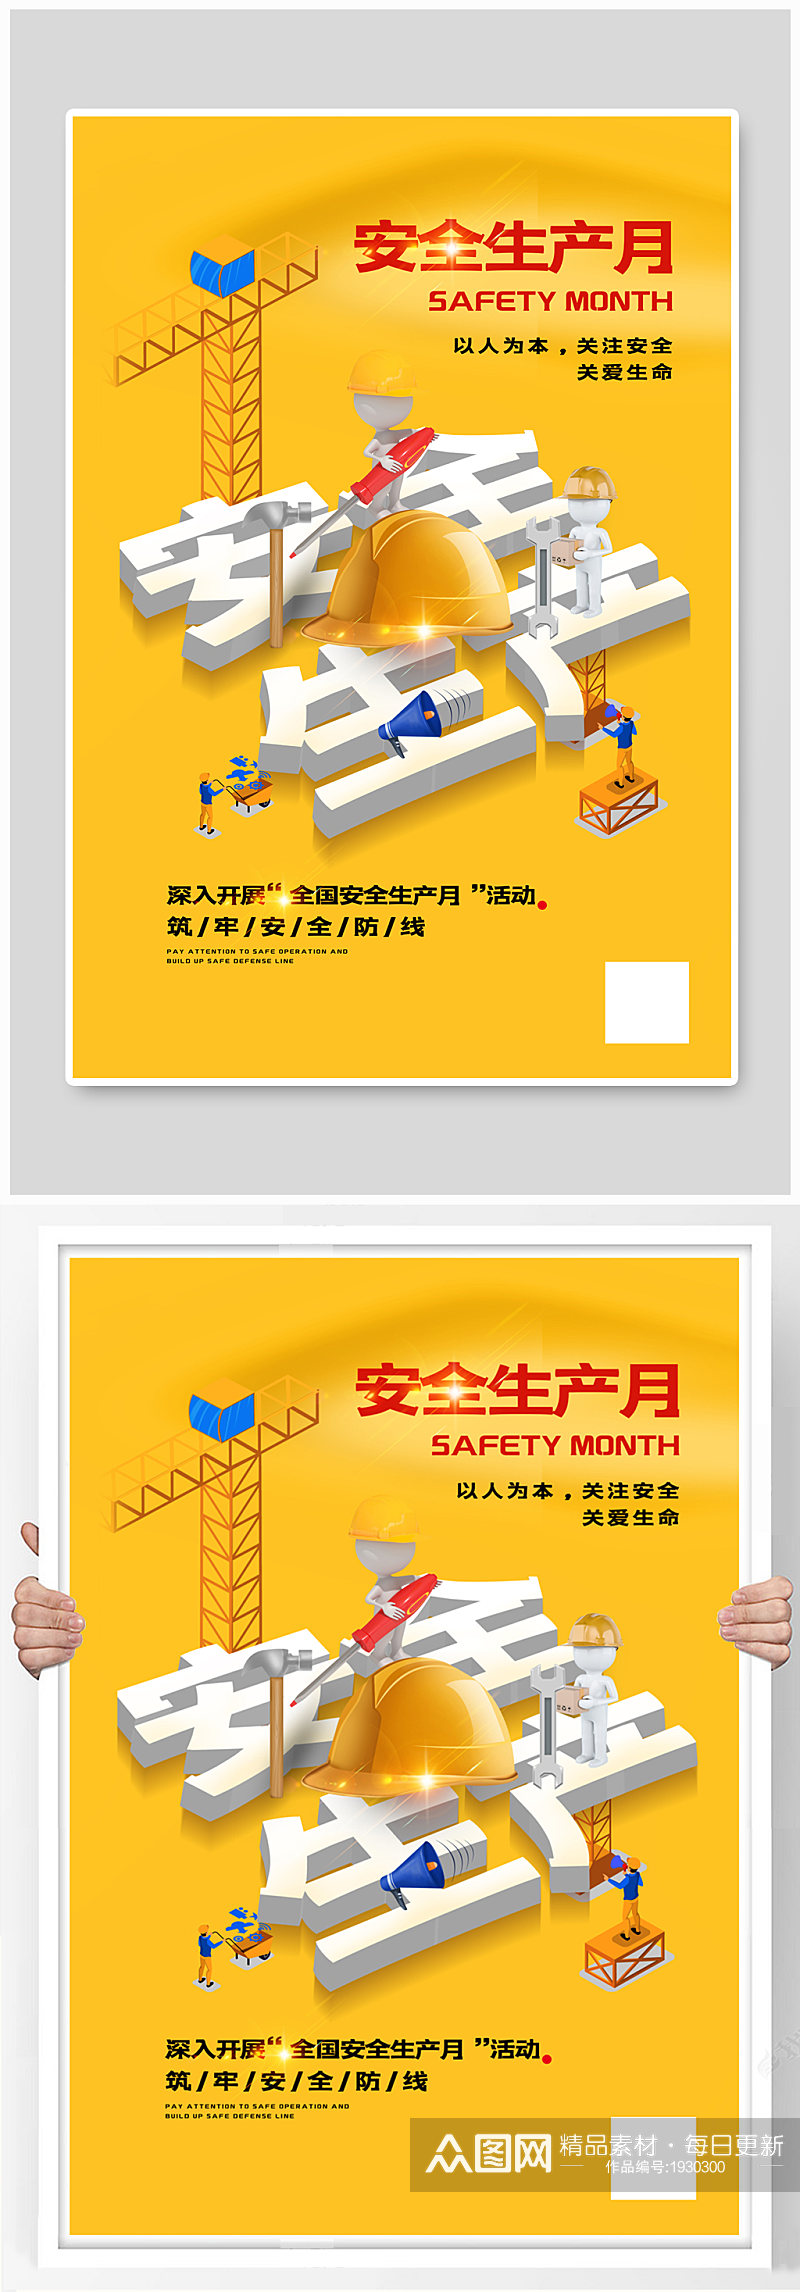 黄色创意立体安全生产月宣传海报素材